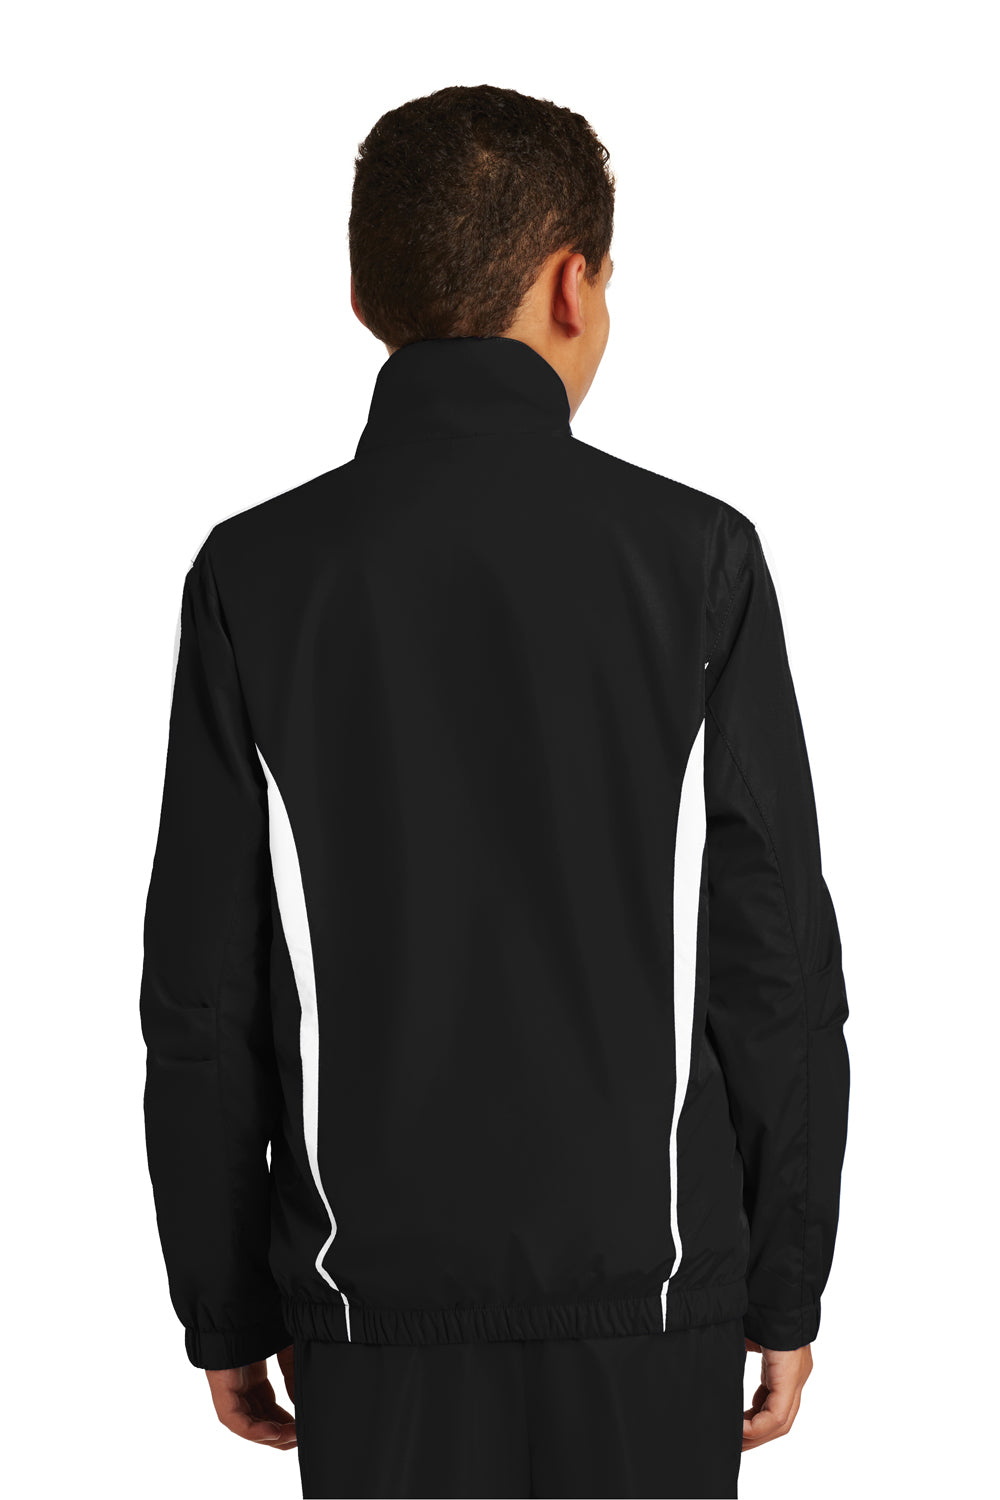 Sport-Tek YST60 Youth Water Resistant Full Zip Jacket Black/White Back